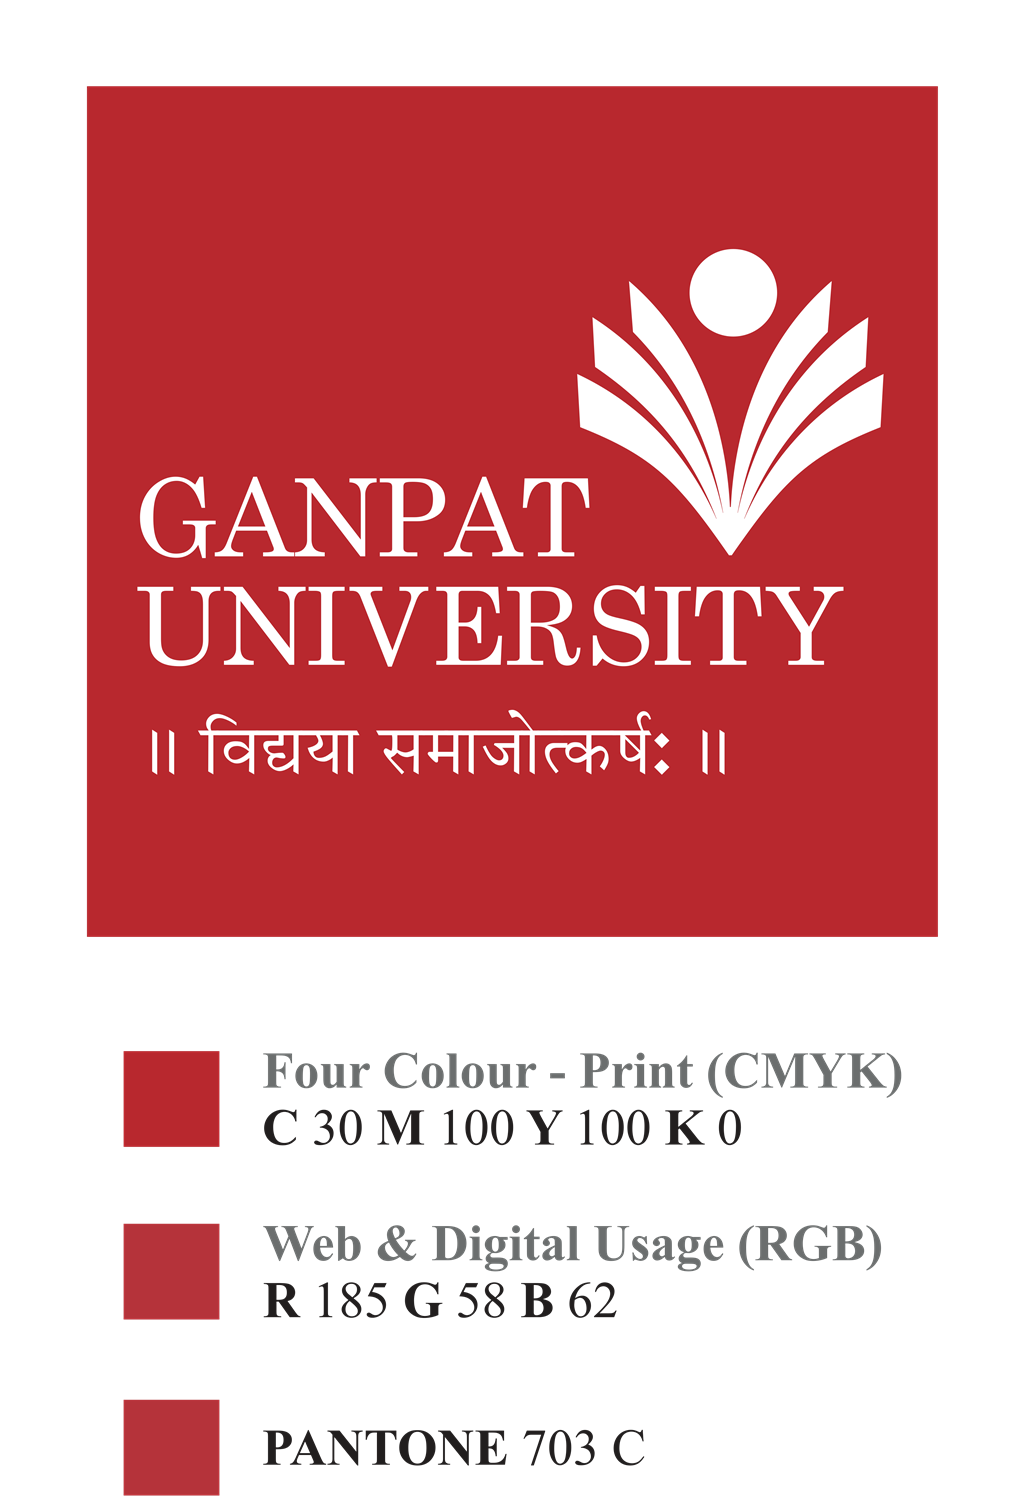 Ganpat University logotype, transparent .png, medium, large